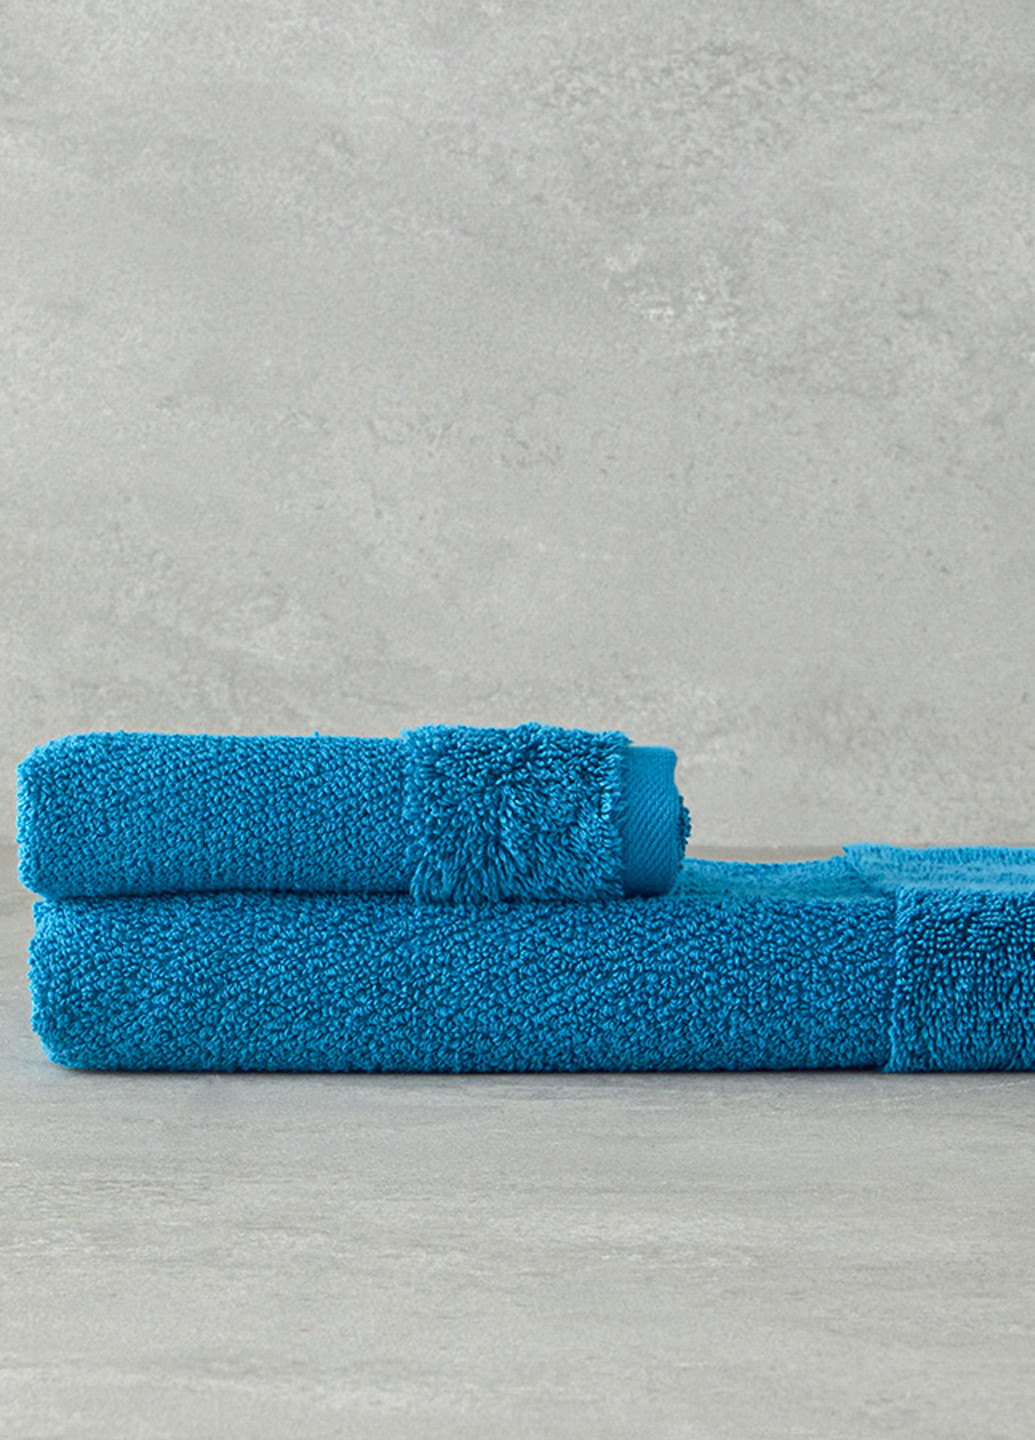 English Home полотенце, 50х80 см однотонный голубой производство - Турция